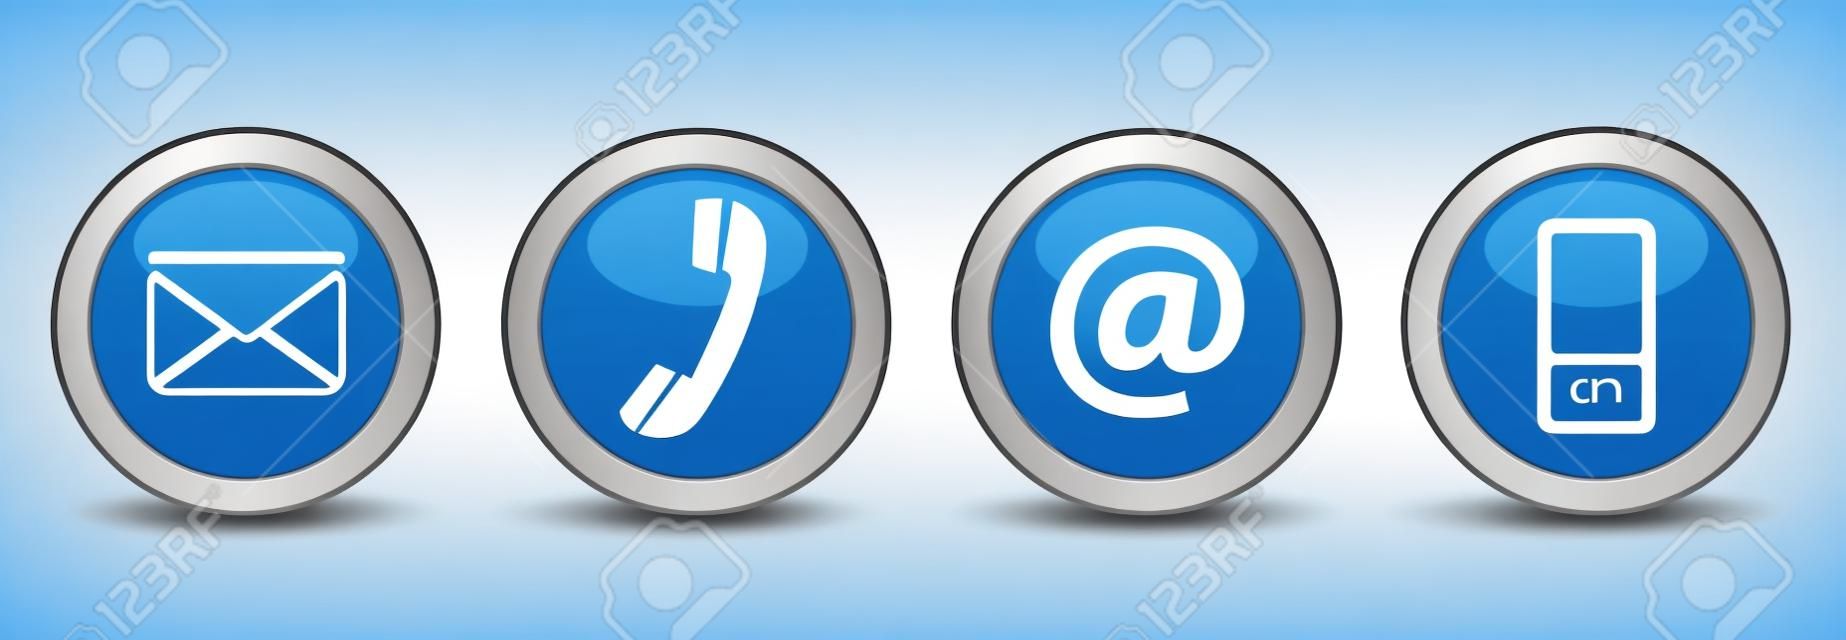 Contactez-nous boutons web mis avec le courrier électronique, au téléphone et icônes mobiles sur fond bleu vecteur insigne en argent EPS 10 illustration isolé sur fond blanc.